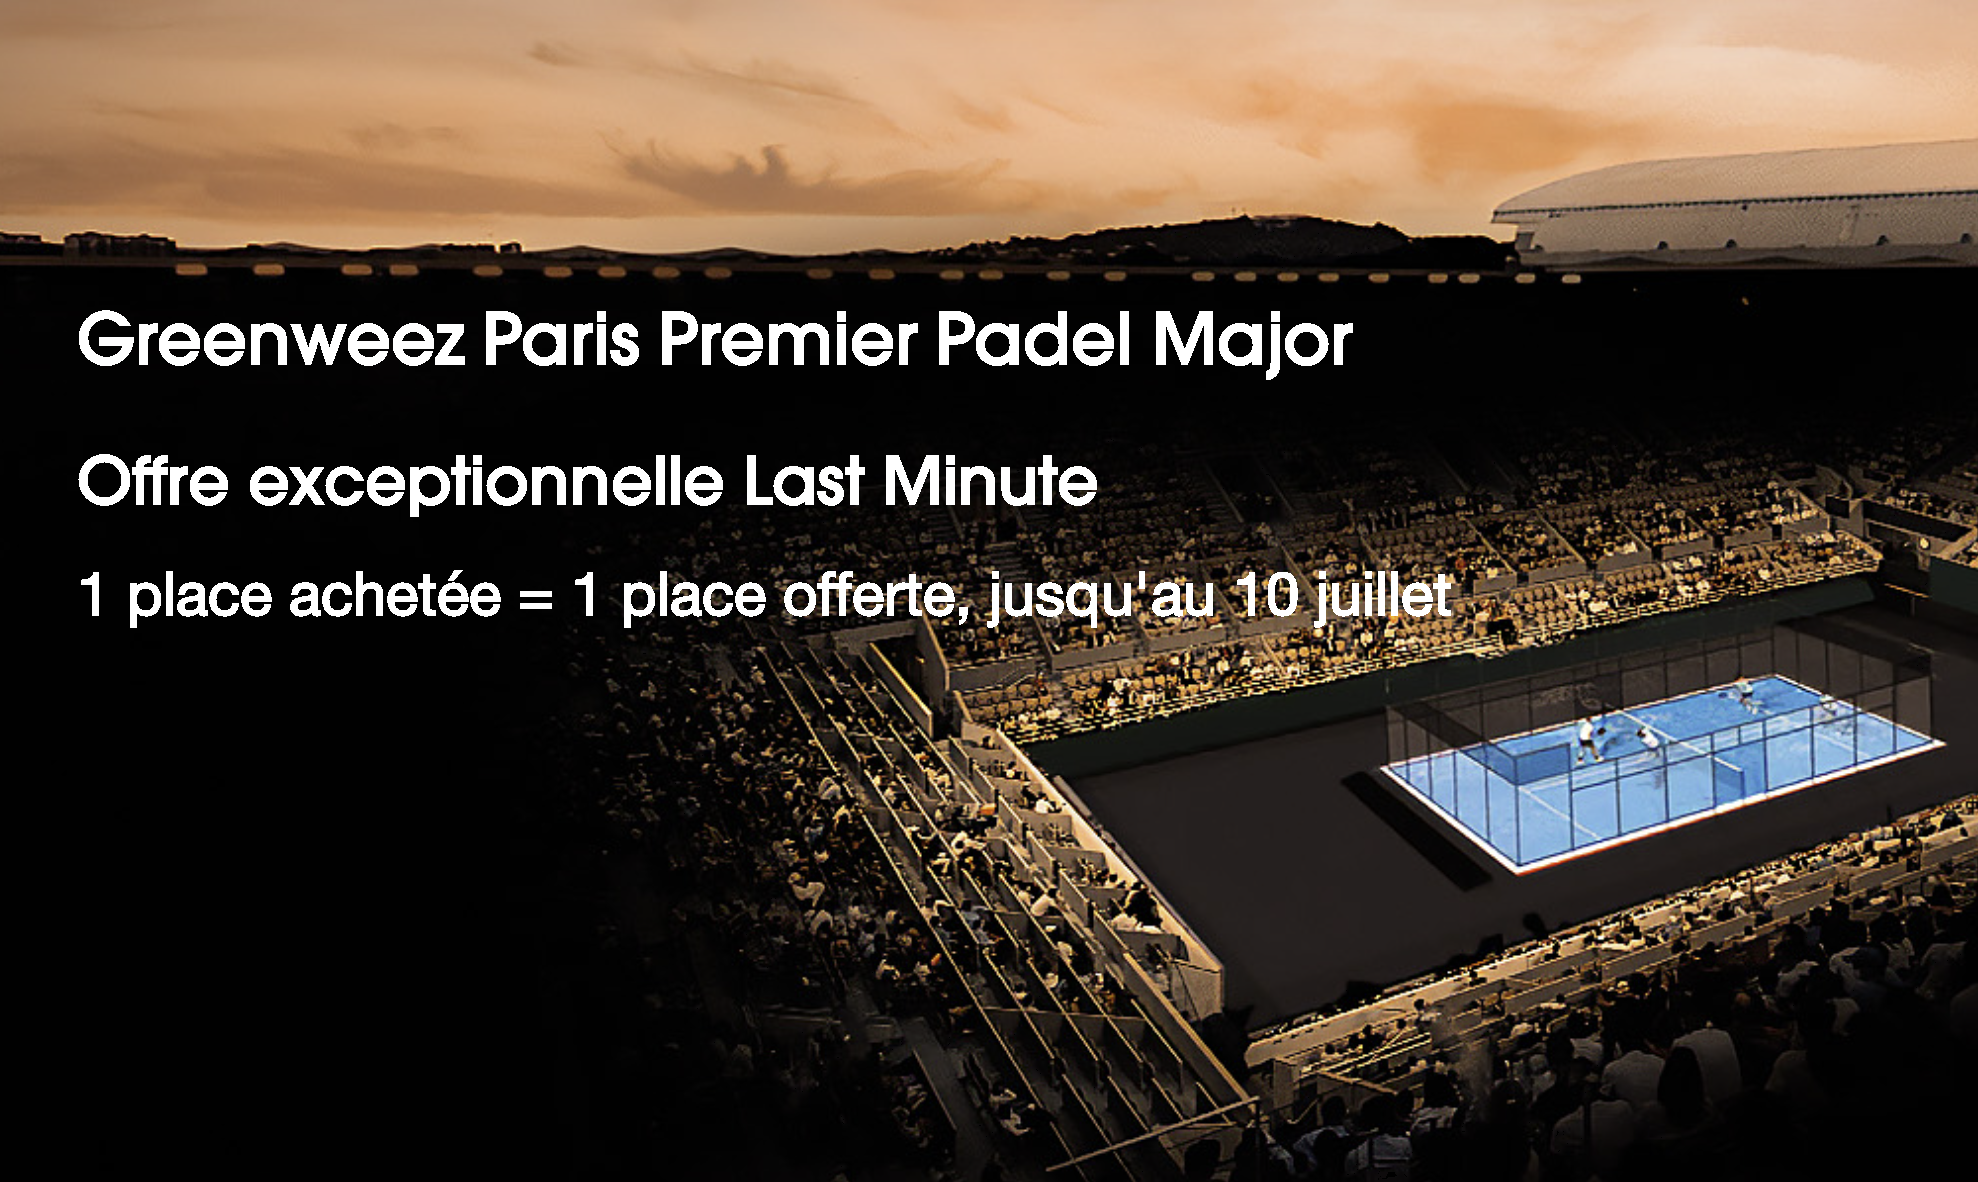 Greenweez Paris Premier Padel Major : Ein Ticket wird für ein gekauftes Ticket angeboten